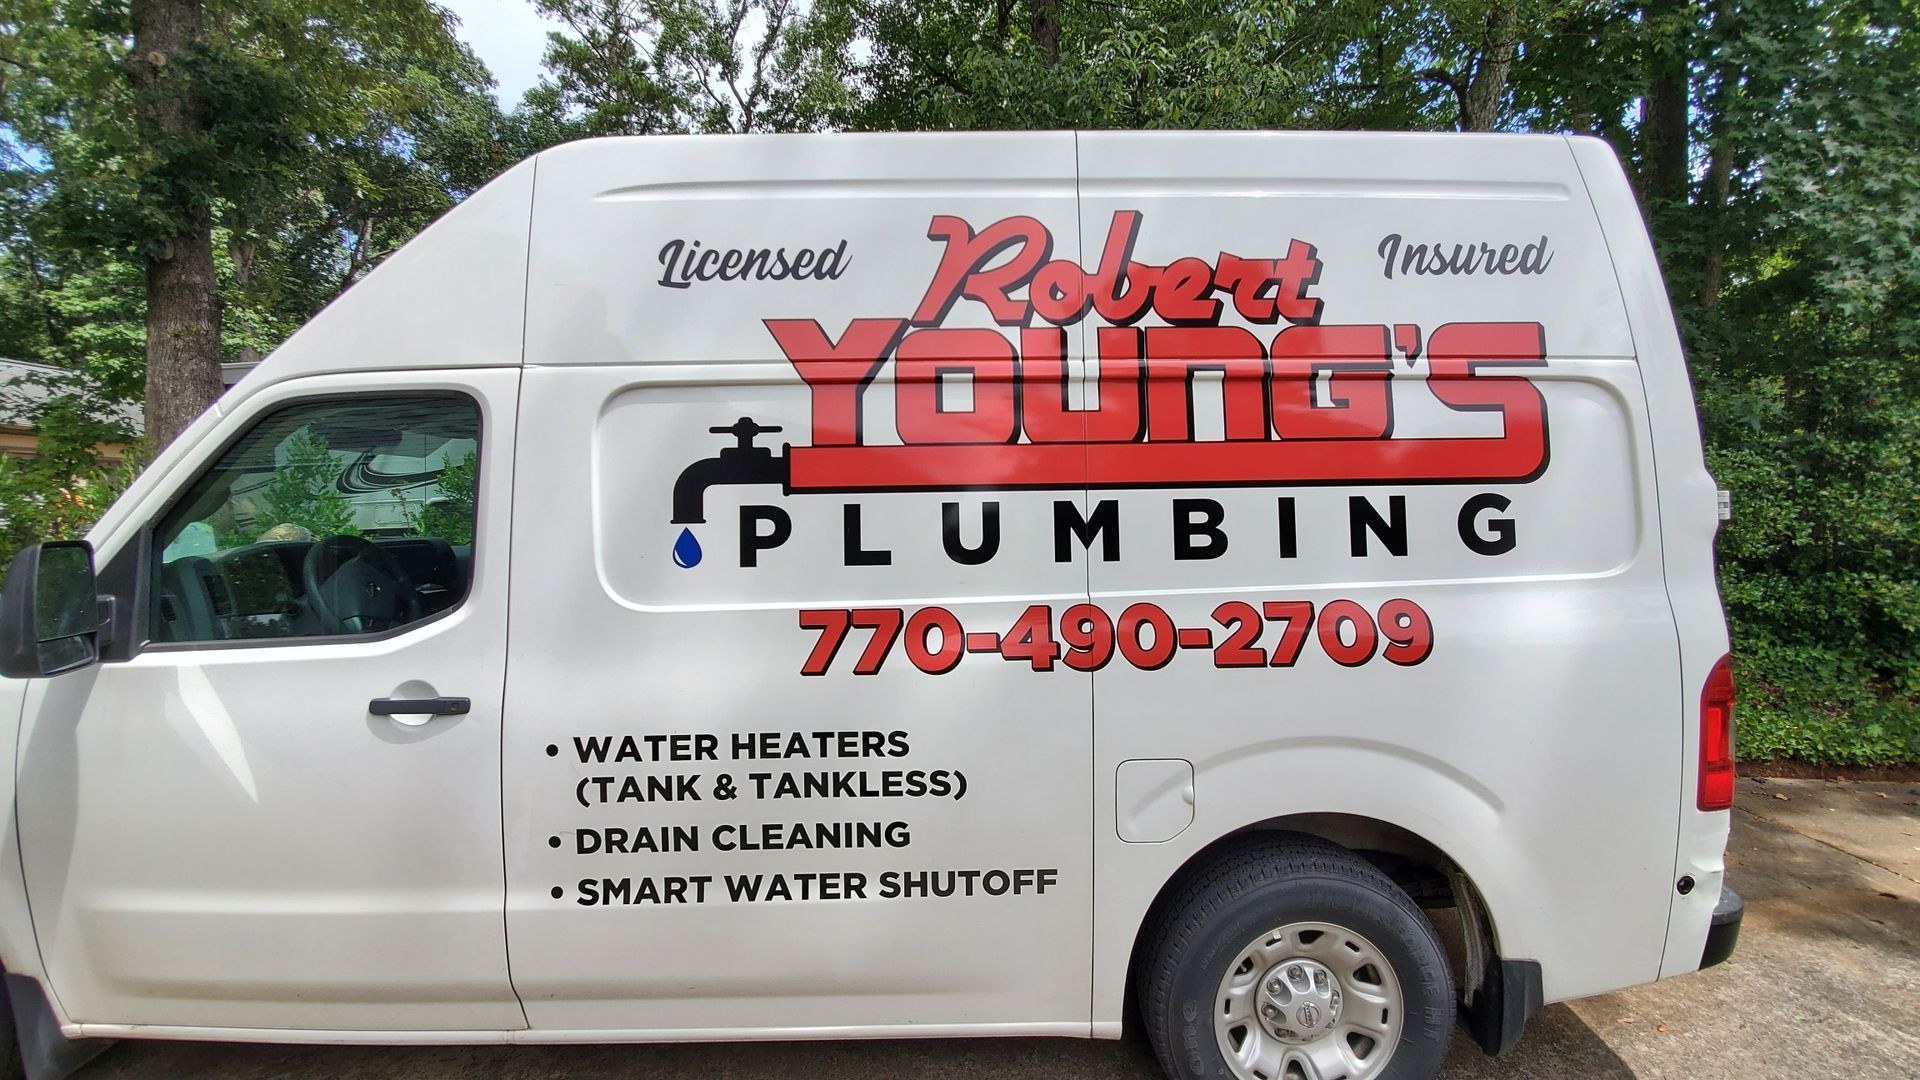 Robert Youngs Plumbing Service Van